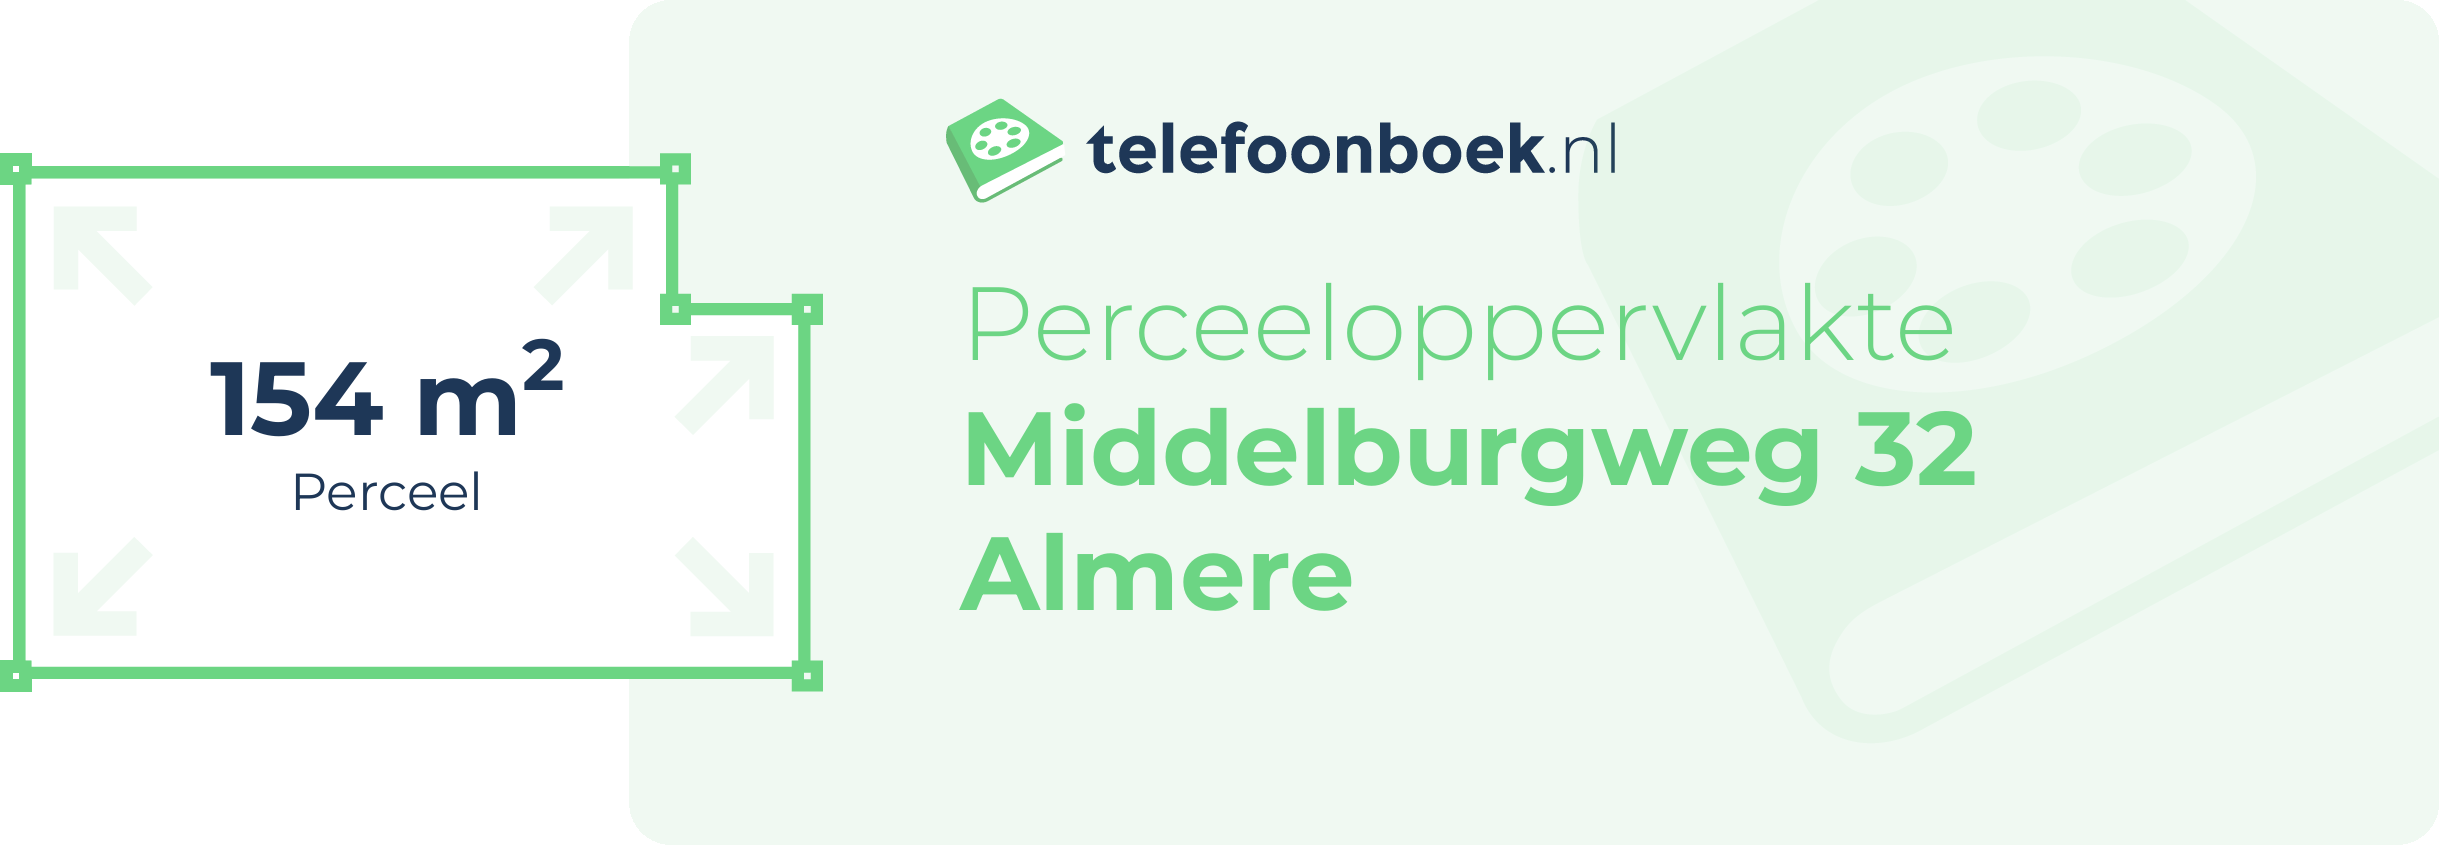 Perceeloppervlakte Middelburgweg 32 Almere